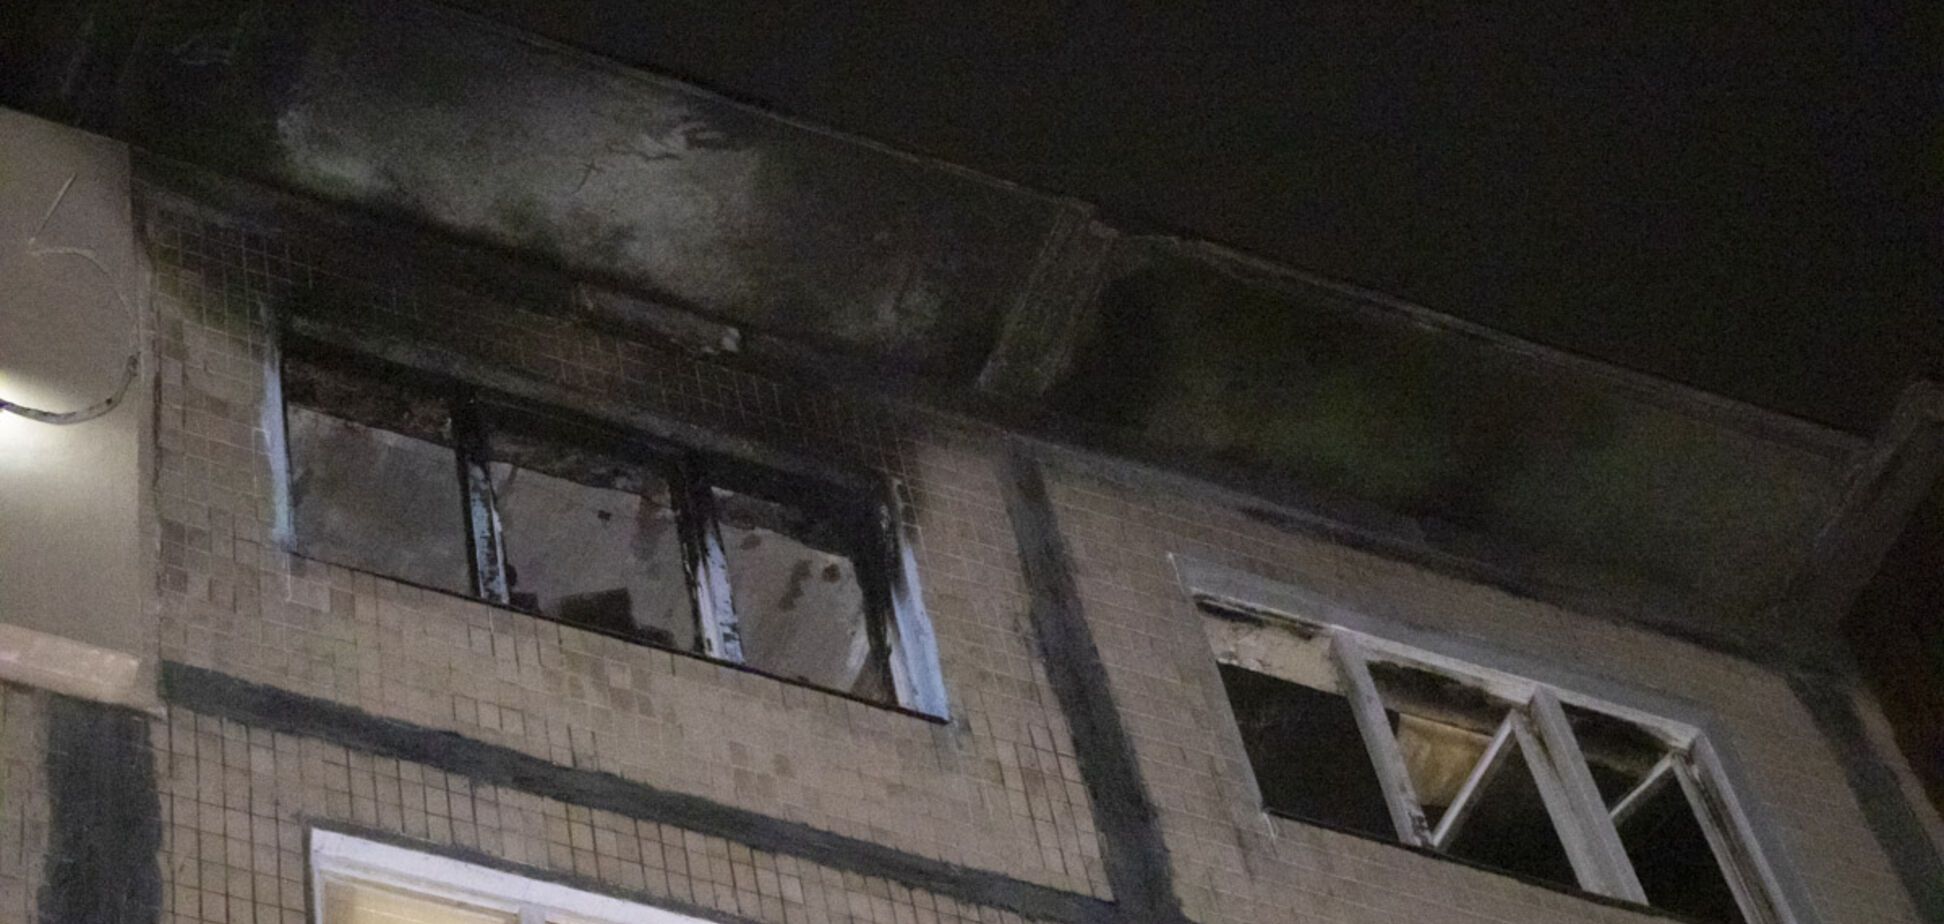 В Киеве мужчина поджег квартиру с соседом внутри